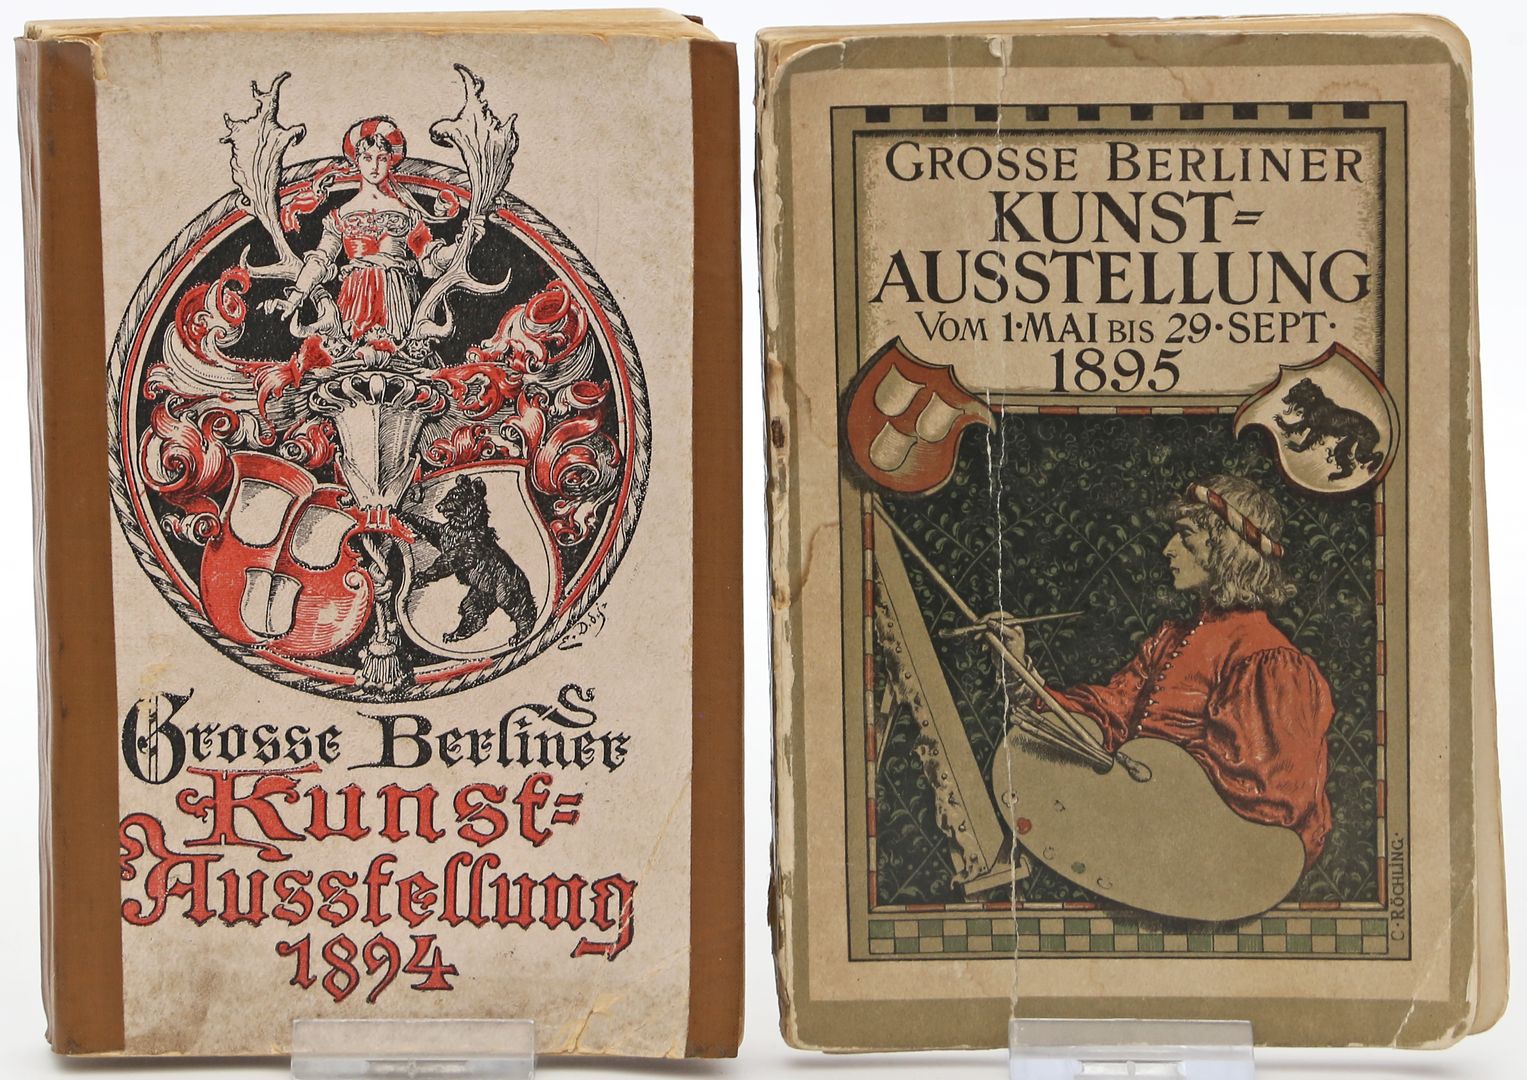 36 Kataloge "Grosse Berliner Kunstausstellung".